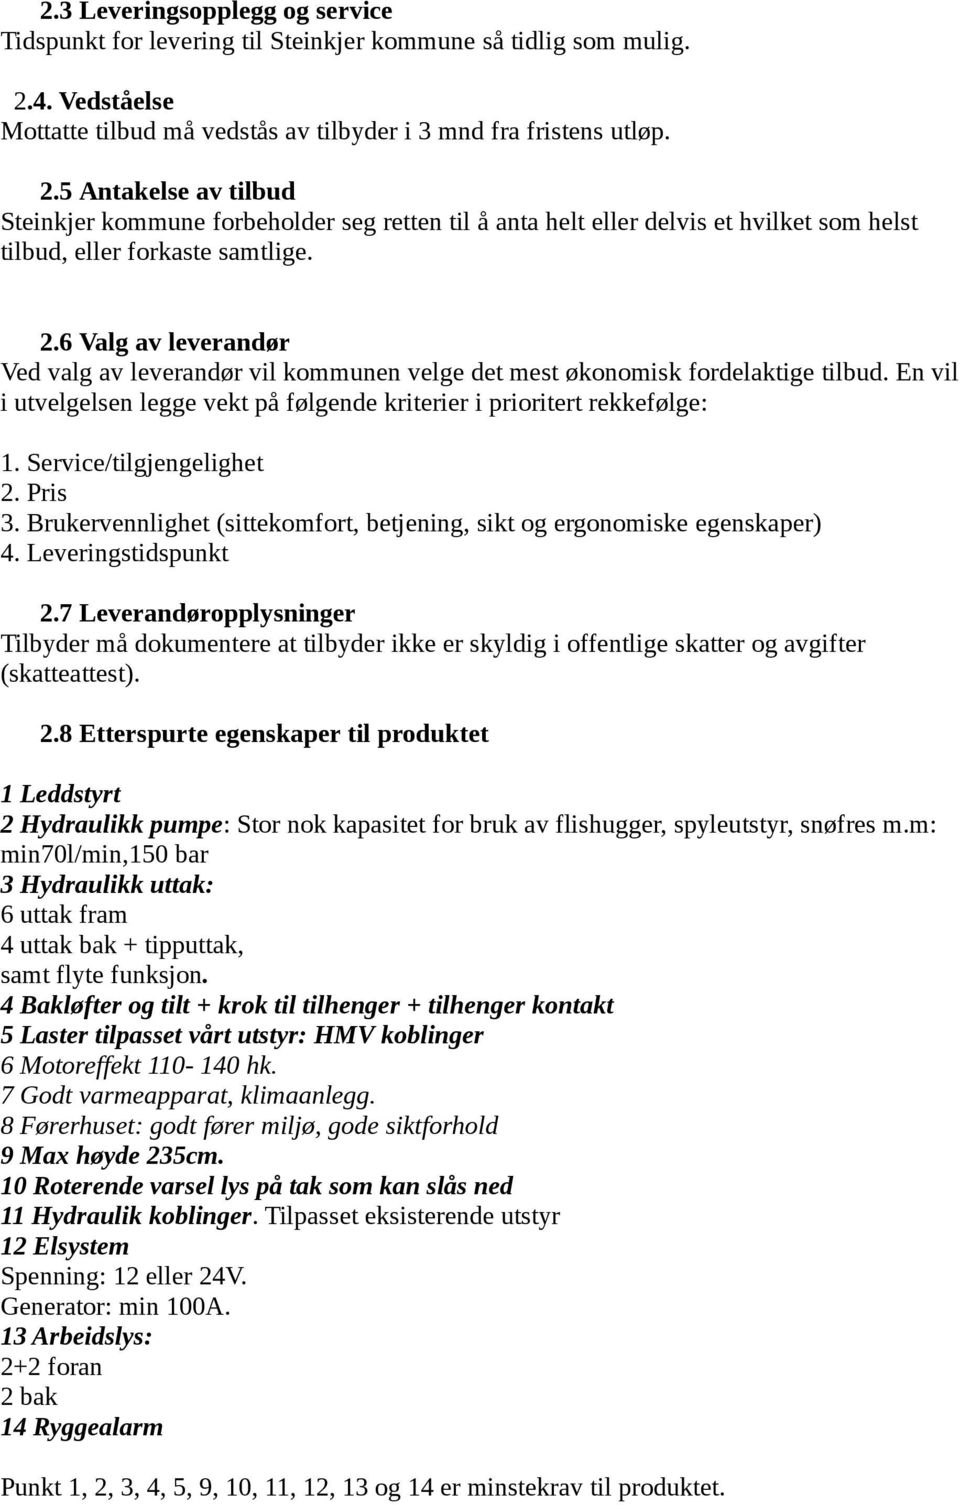 5 Antakelse av tilbud Steinkjer kommune forbeholder seg retten til å anta helt eller delvis et hvilket som helst tilbud, eller forkaste samtlige. 2.